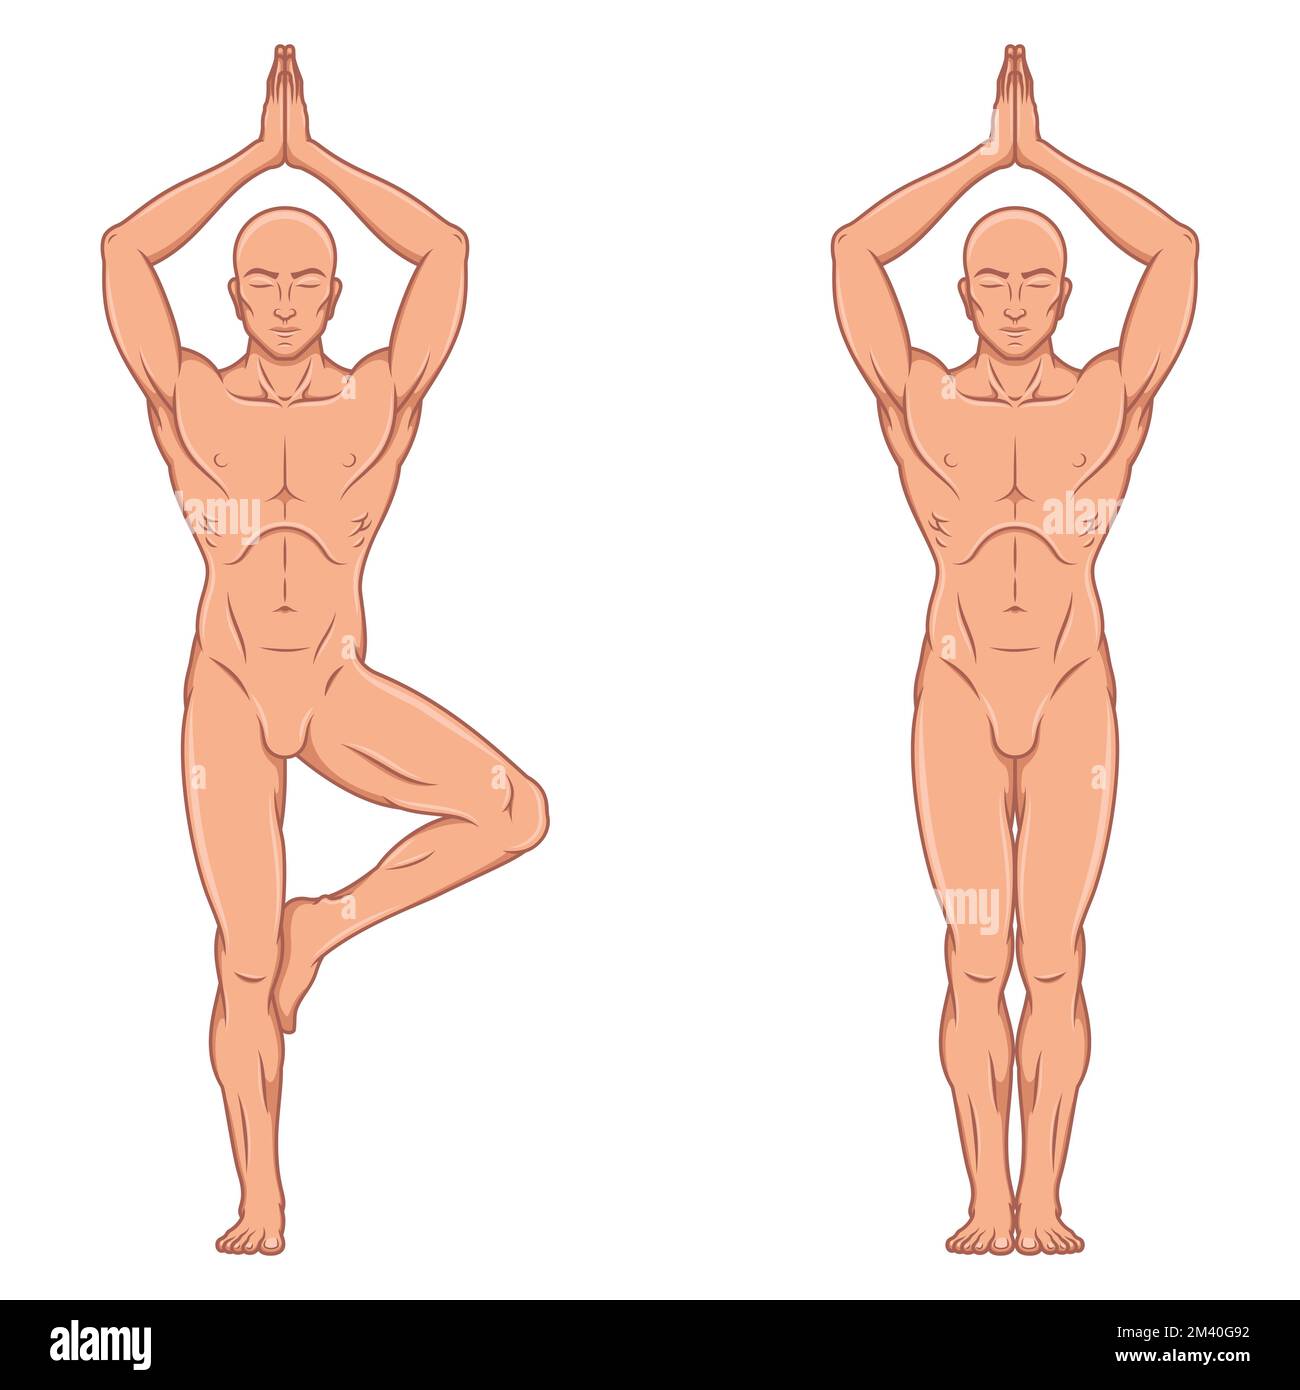 Vektordesign des Mannes, der Fitness und Pilates-Training macht, des Mannes meditiert Yoga Stock Vektor